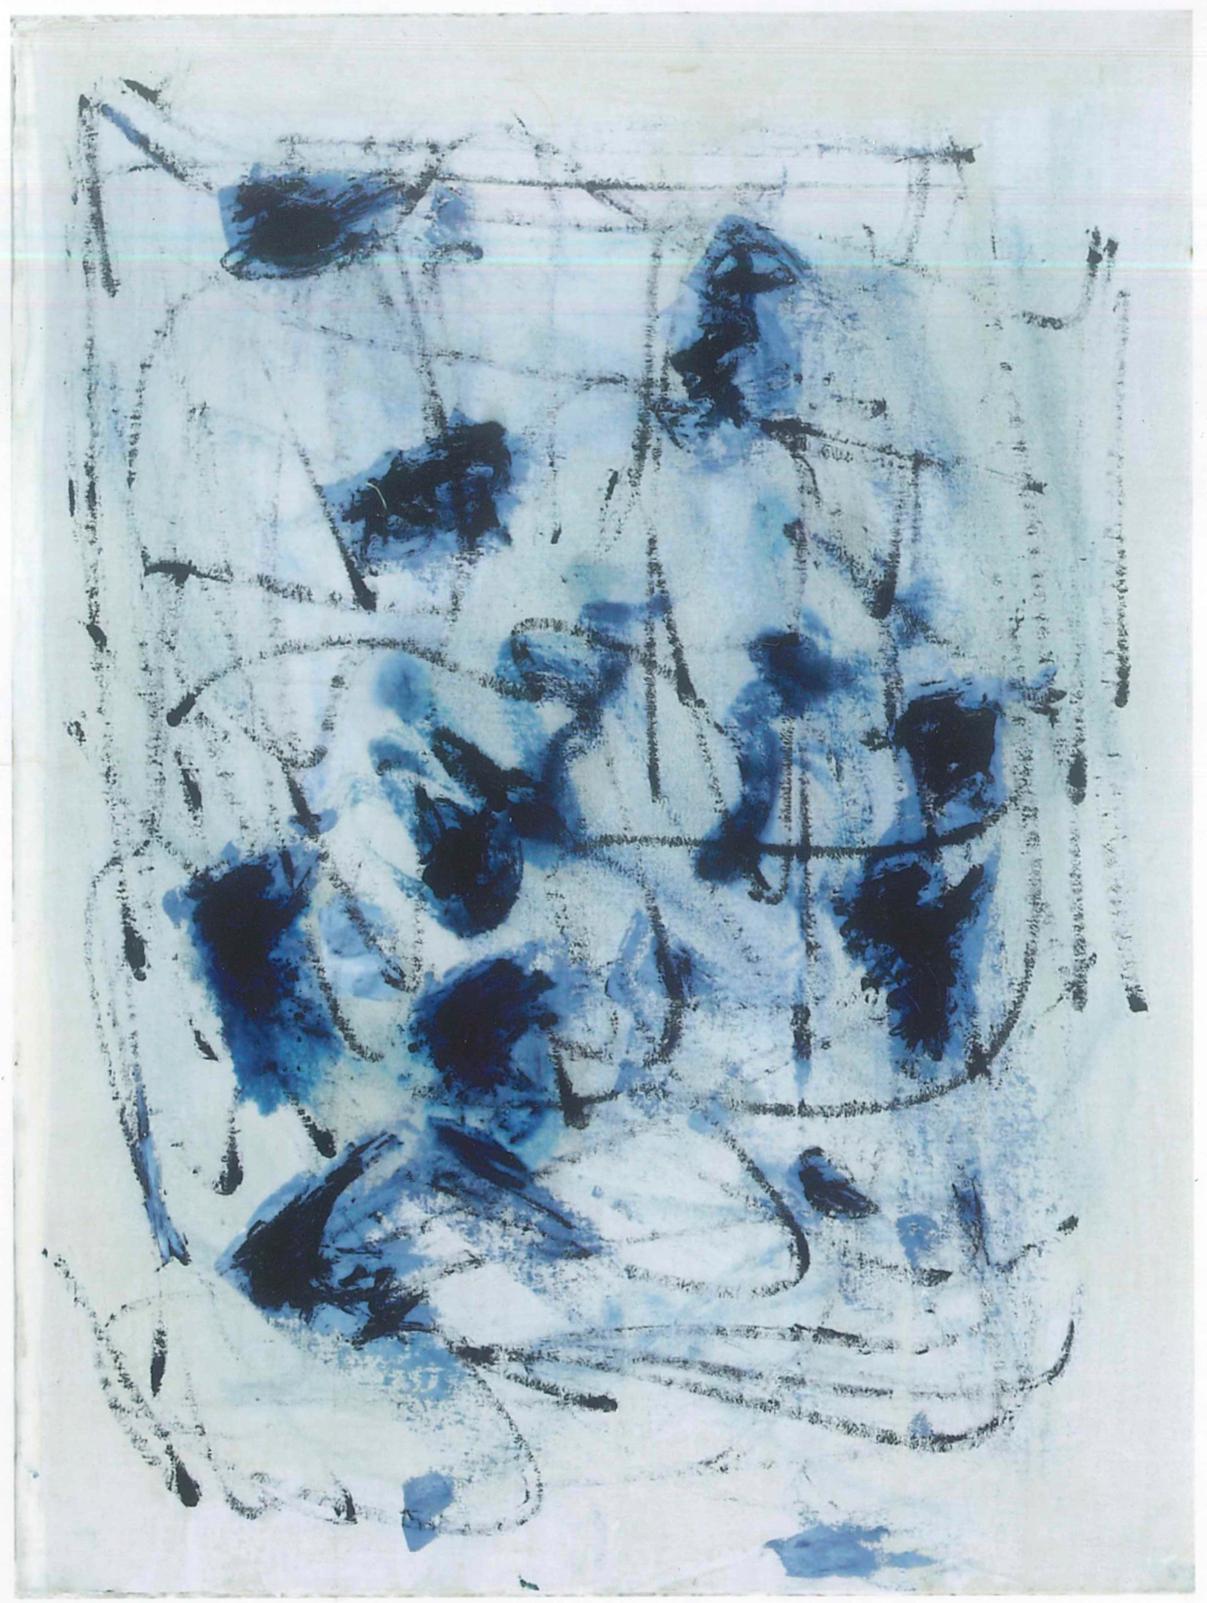 Hommage an Turcato ist ein Originalkunstwerk von Giorgio Lo Fermo aus dem Jahr 1998.

Öl auf Leinwand, aufgetragen auf Hartfaserplatte.

Dieses zeitgenössische Kunstwerk ist eine abstrakte Komposition, in der der Blauton der Farbe vorherrscht. Das